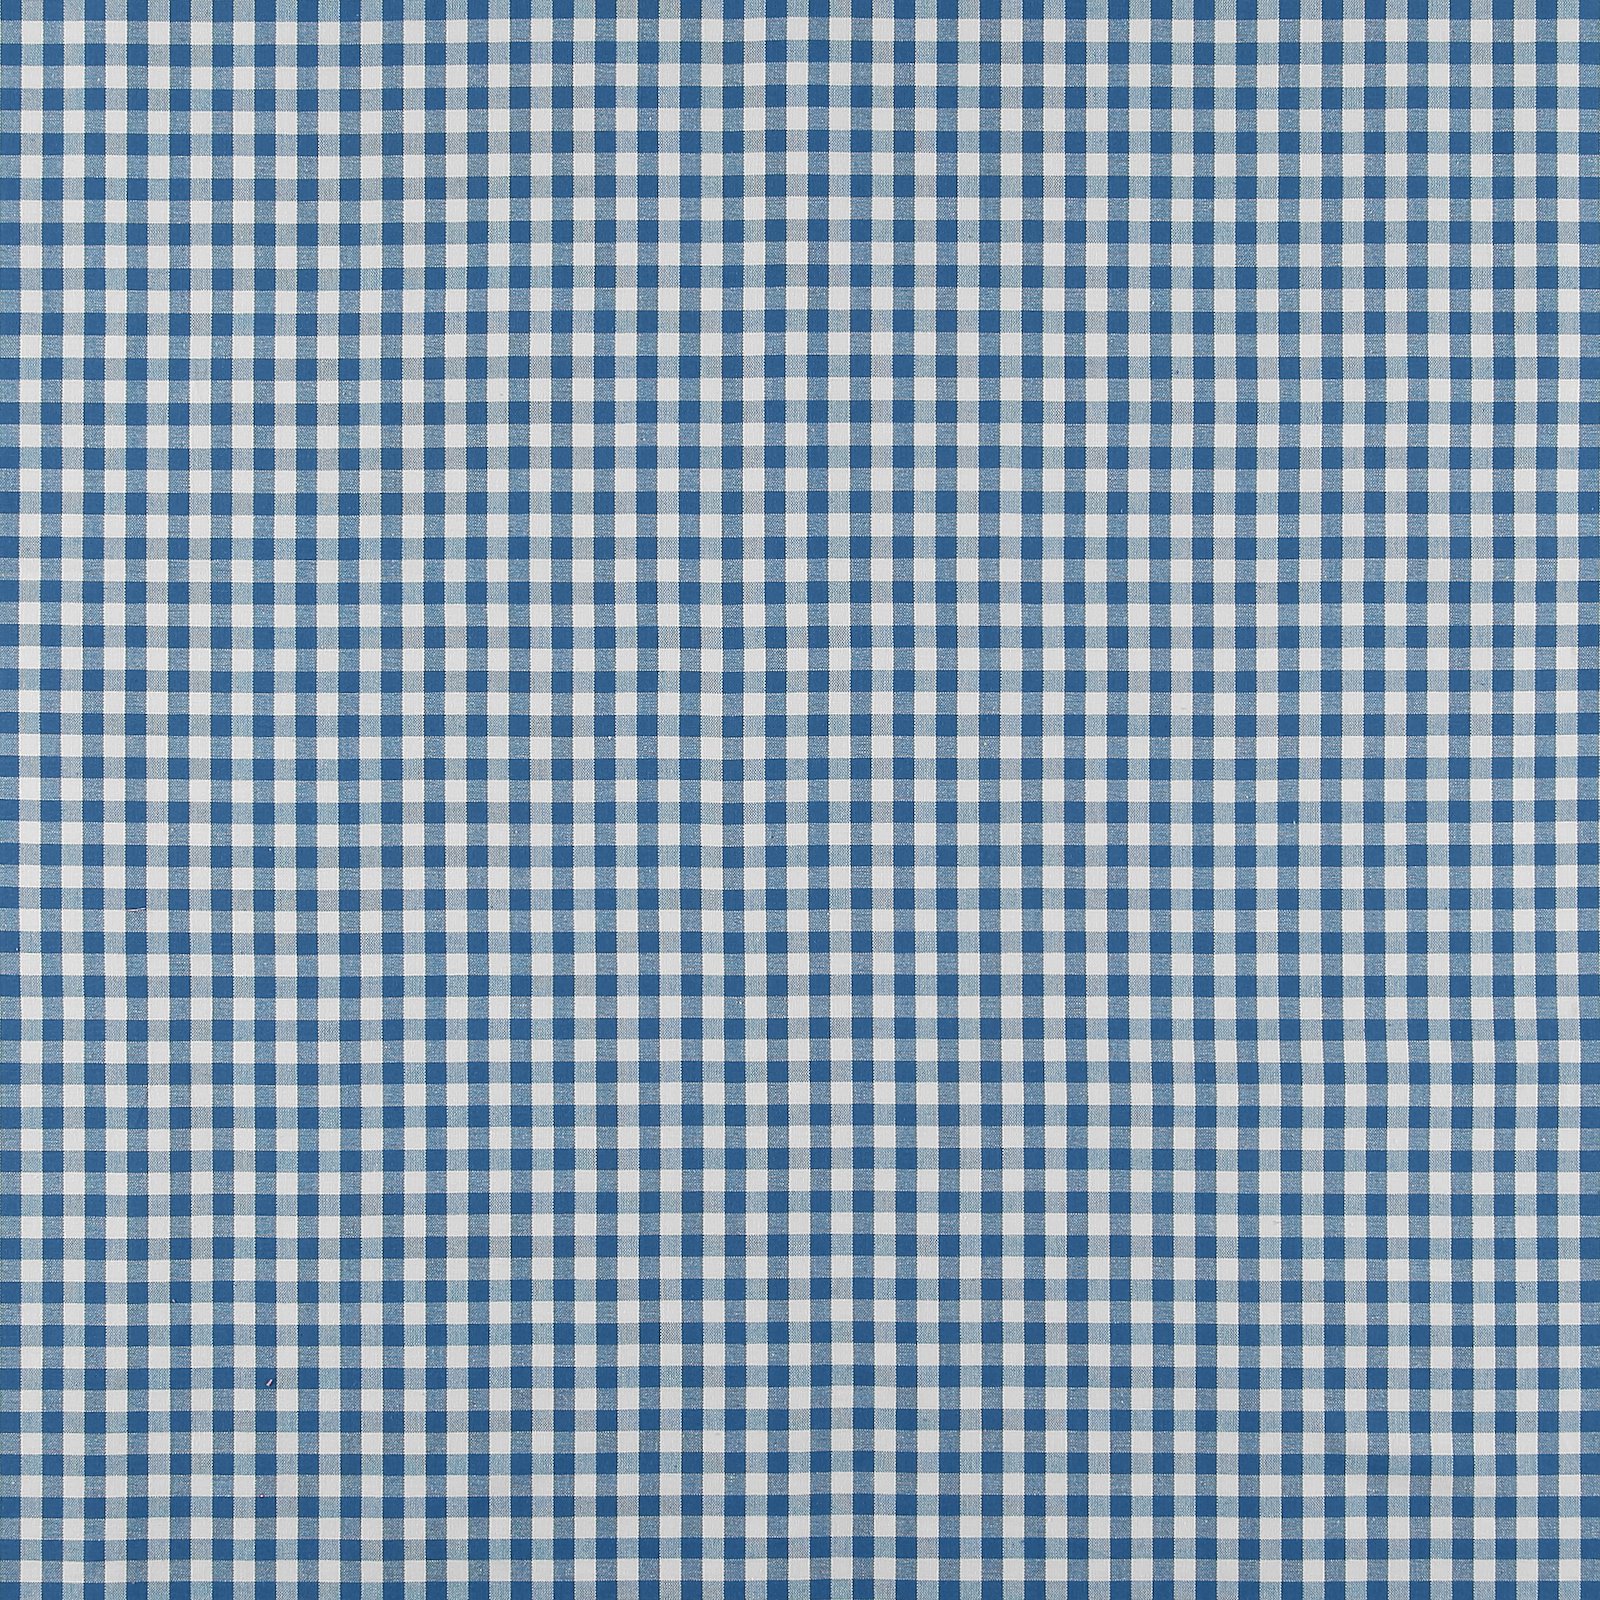 Baumwolle, blau/weiß kariert garngefärbt 816295_pack_sp